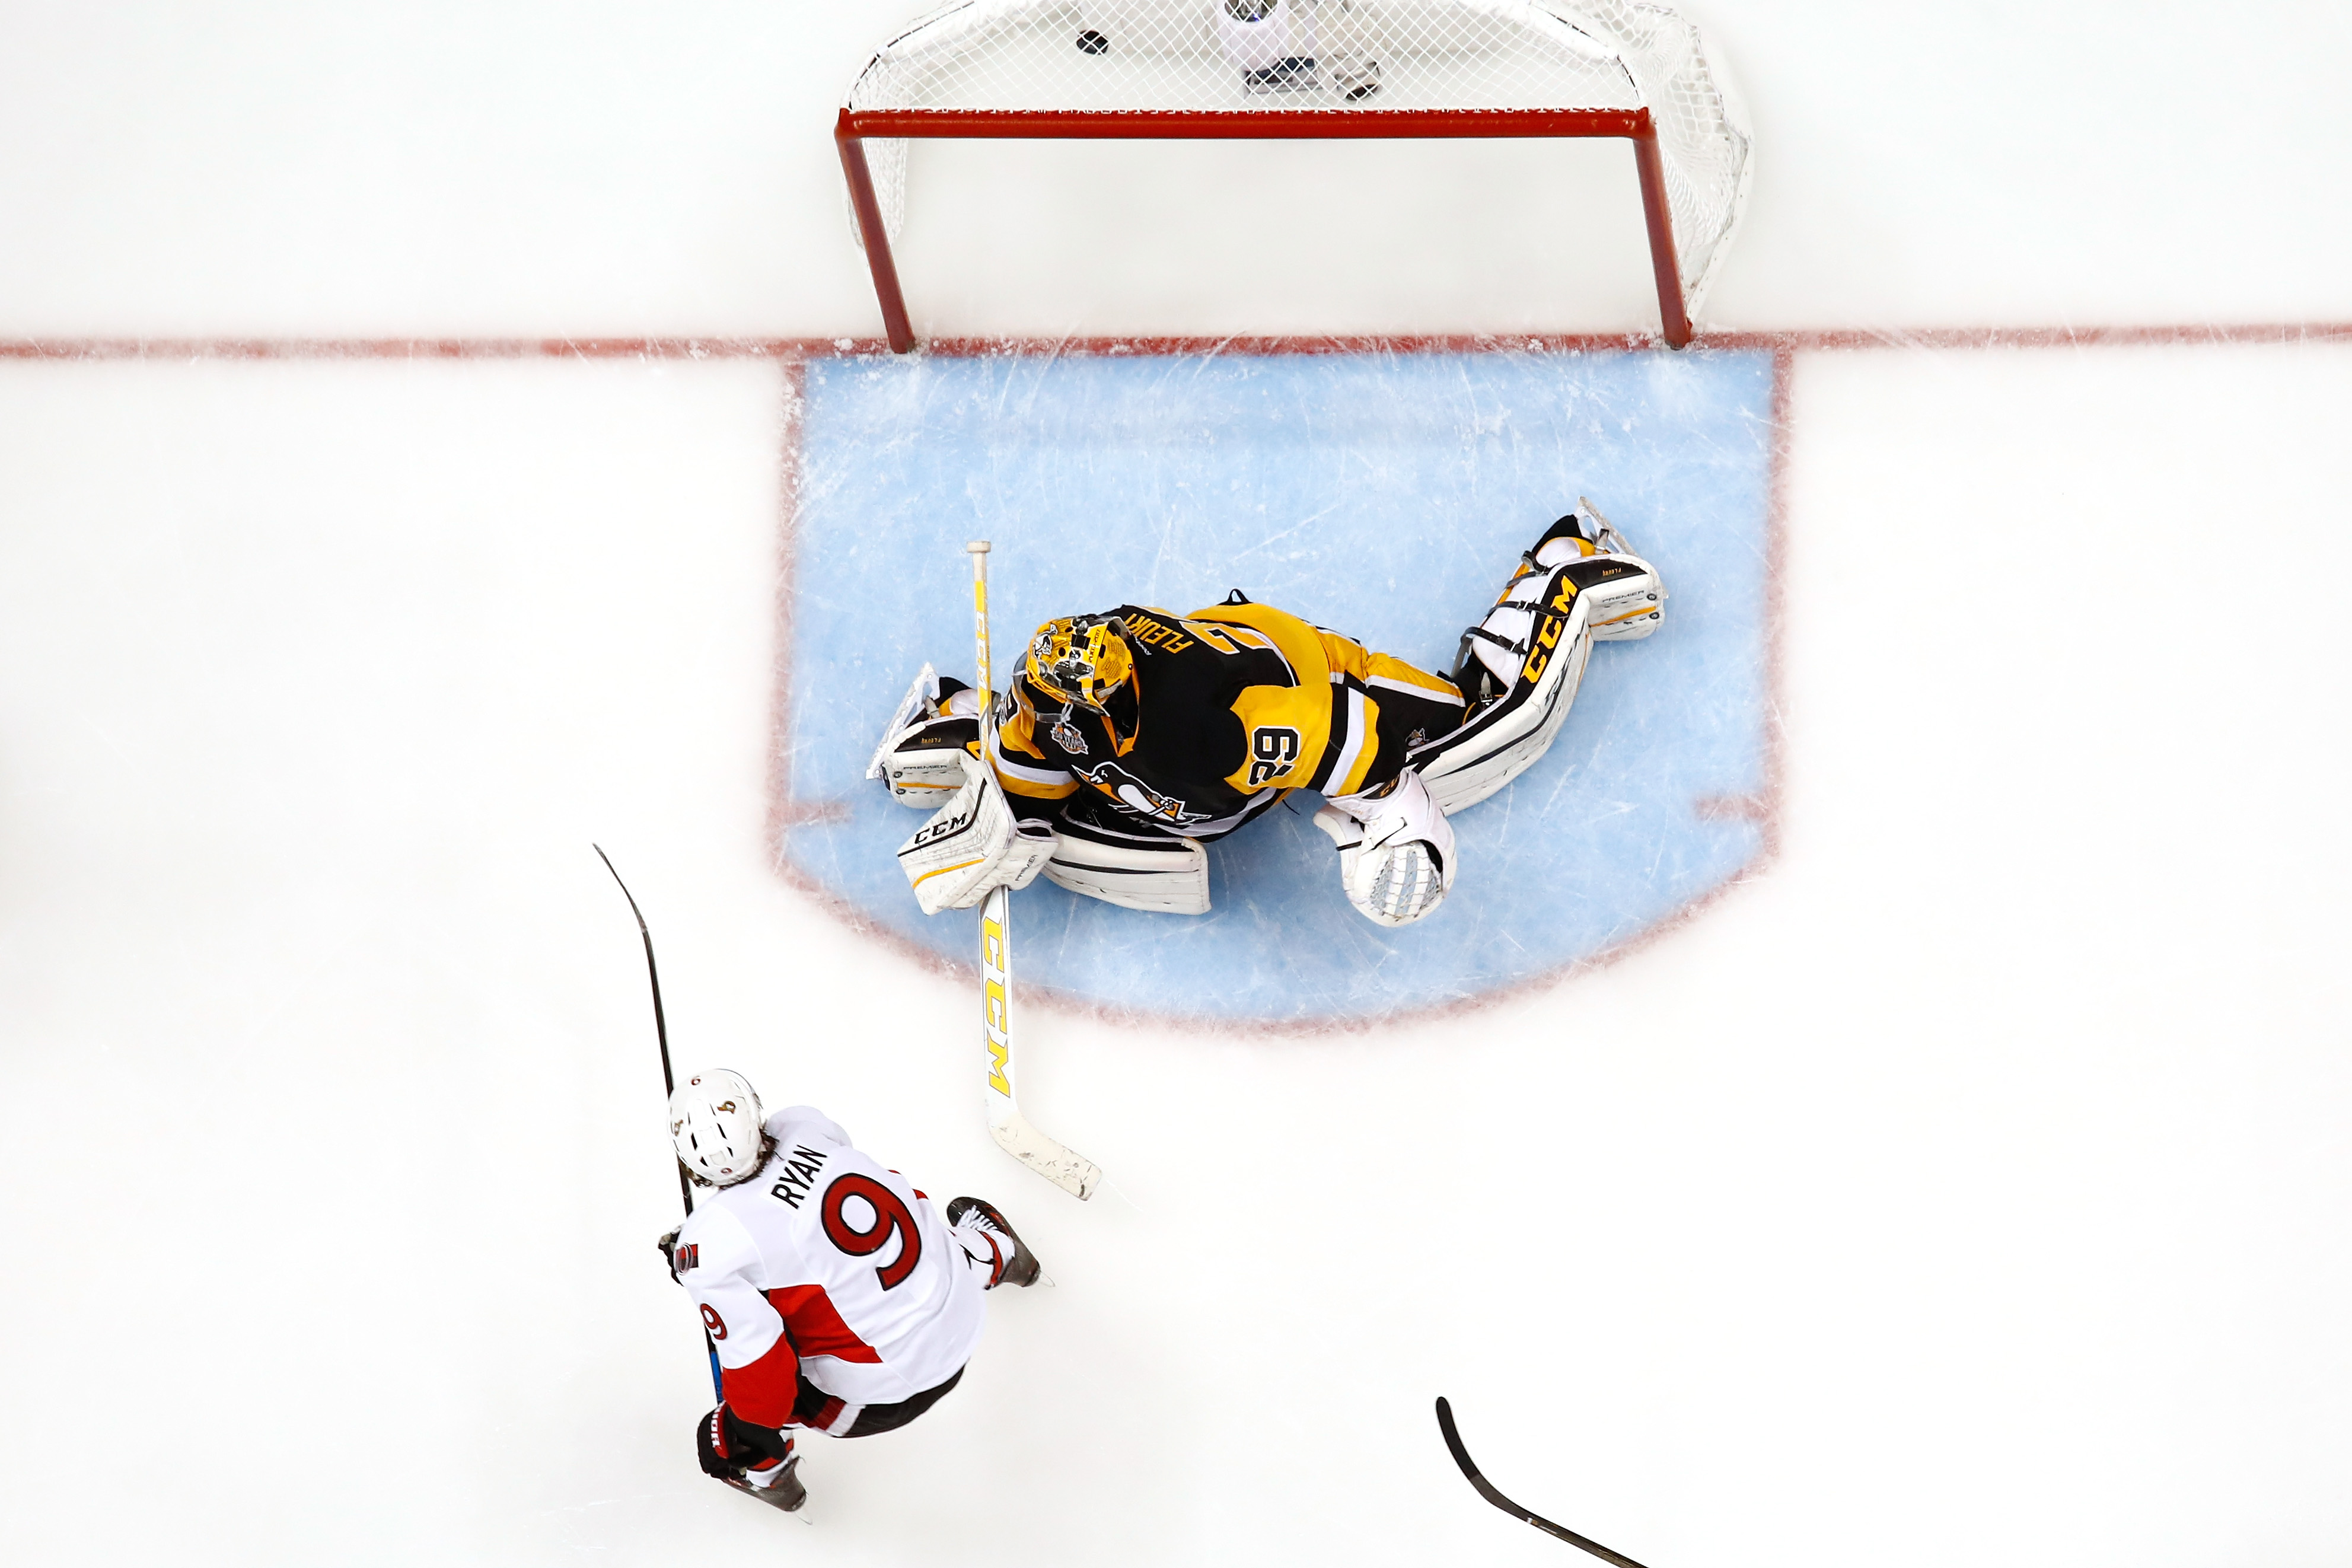 Ottawa Senators v Pittsburgh Penguins - Game One